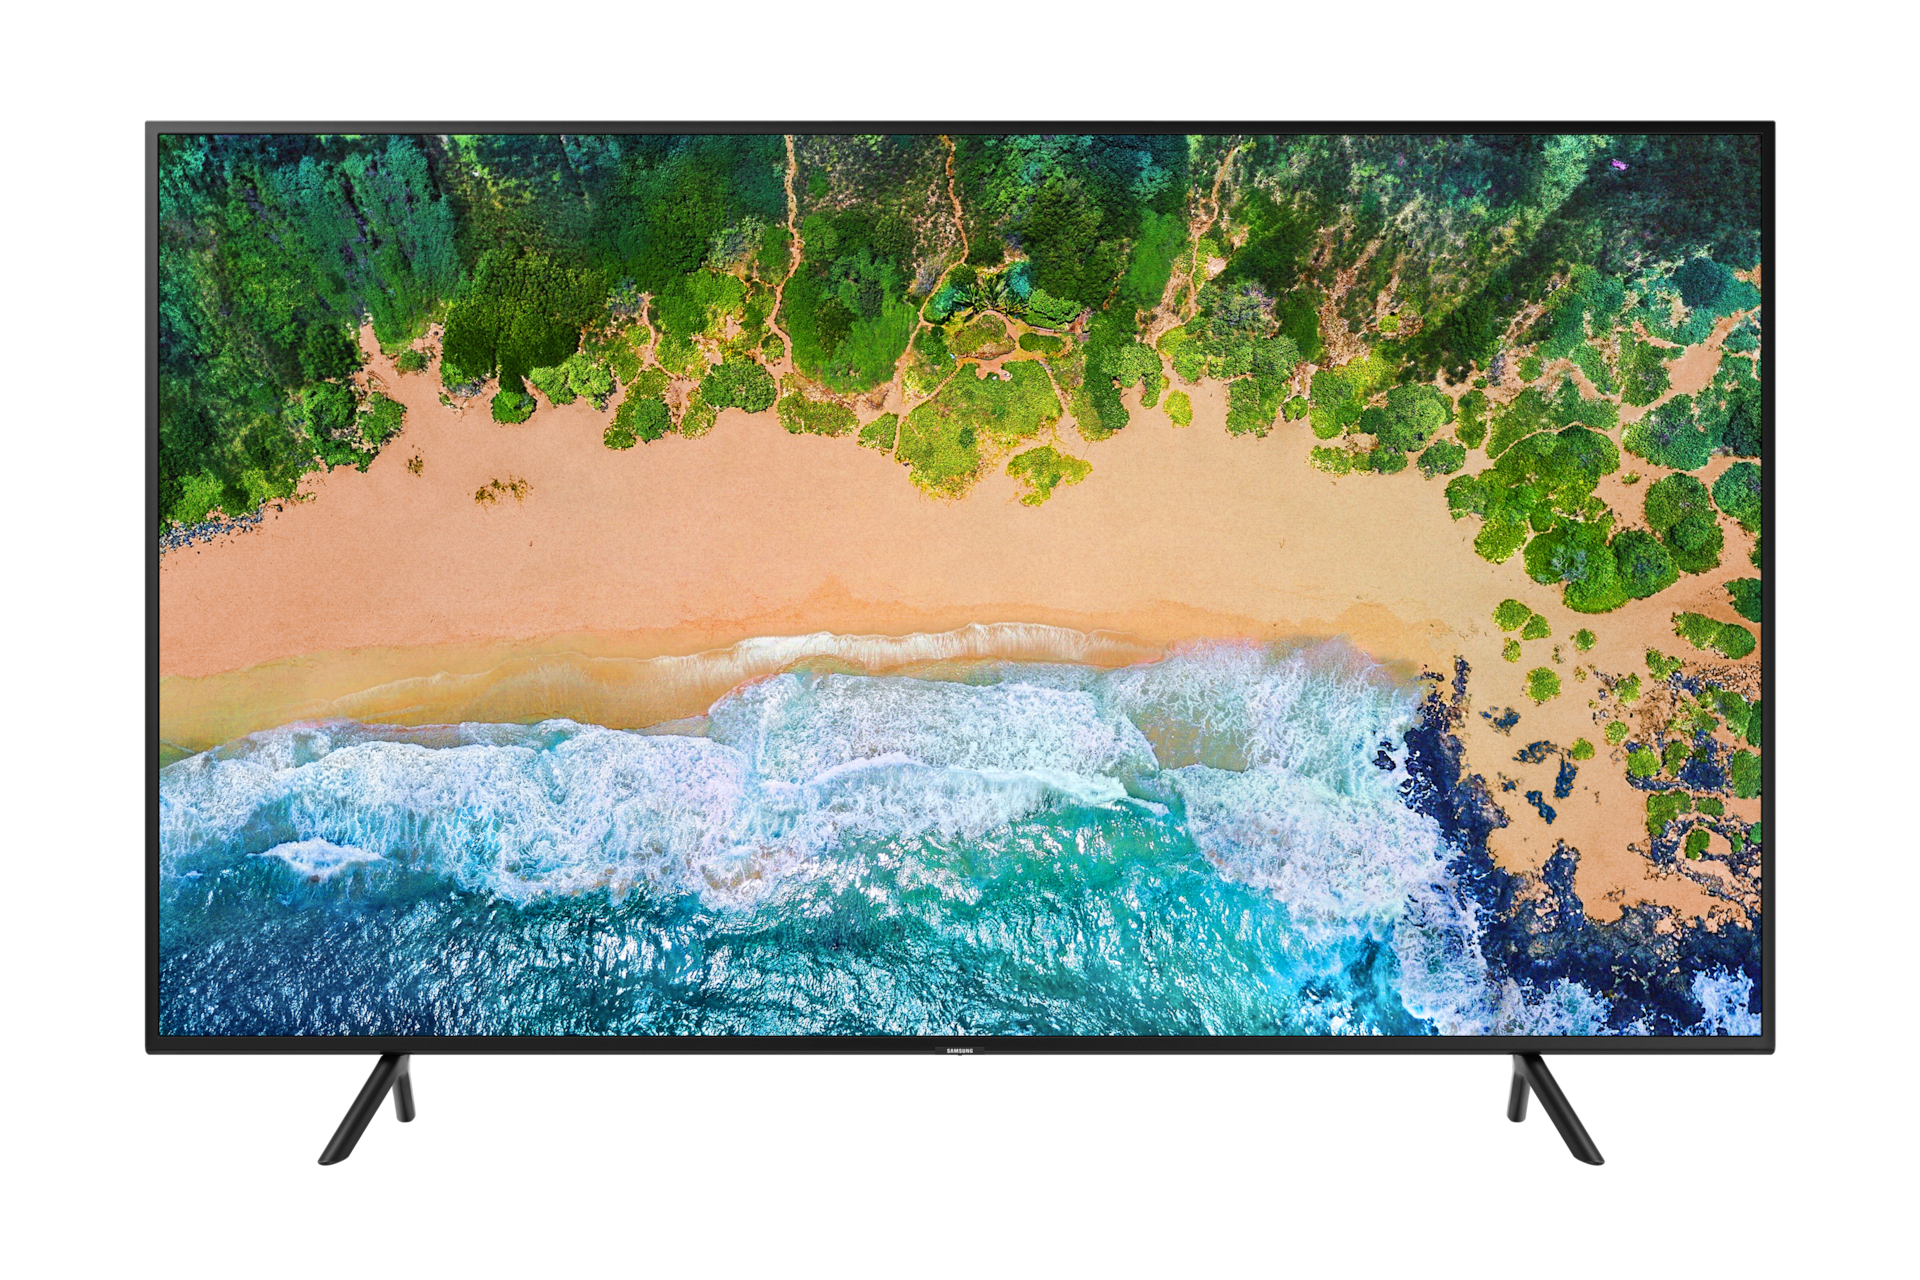 Tv Samsung de 55 pulgadas 4K ultra HD smart tv modelo UN55TU7100